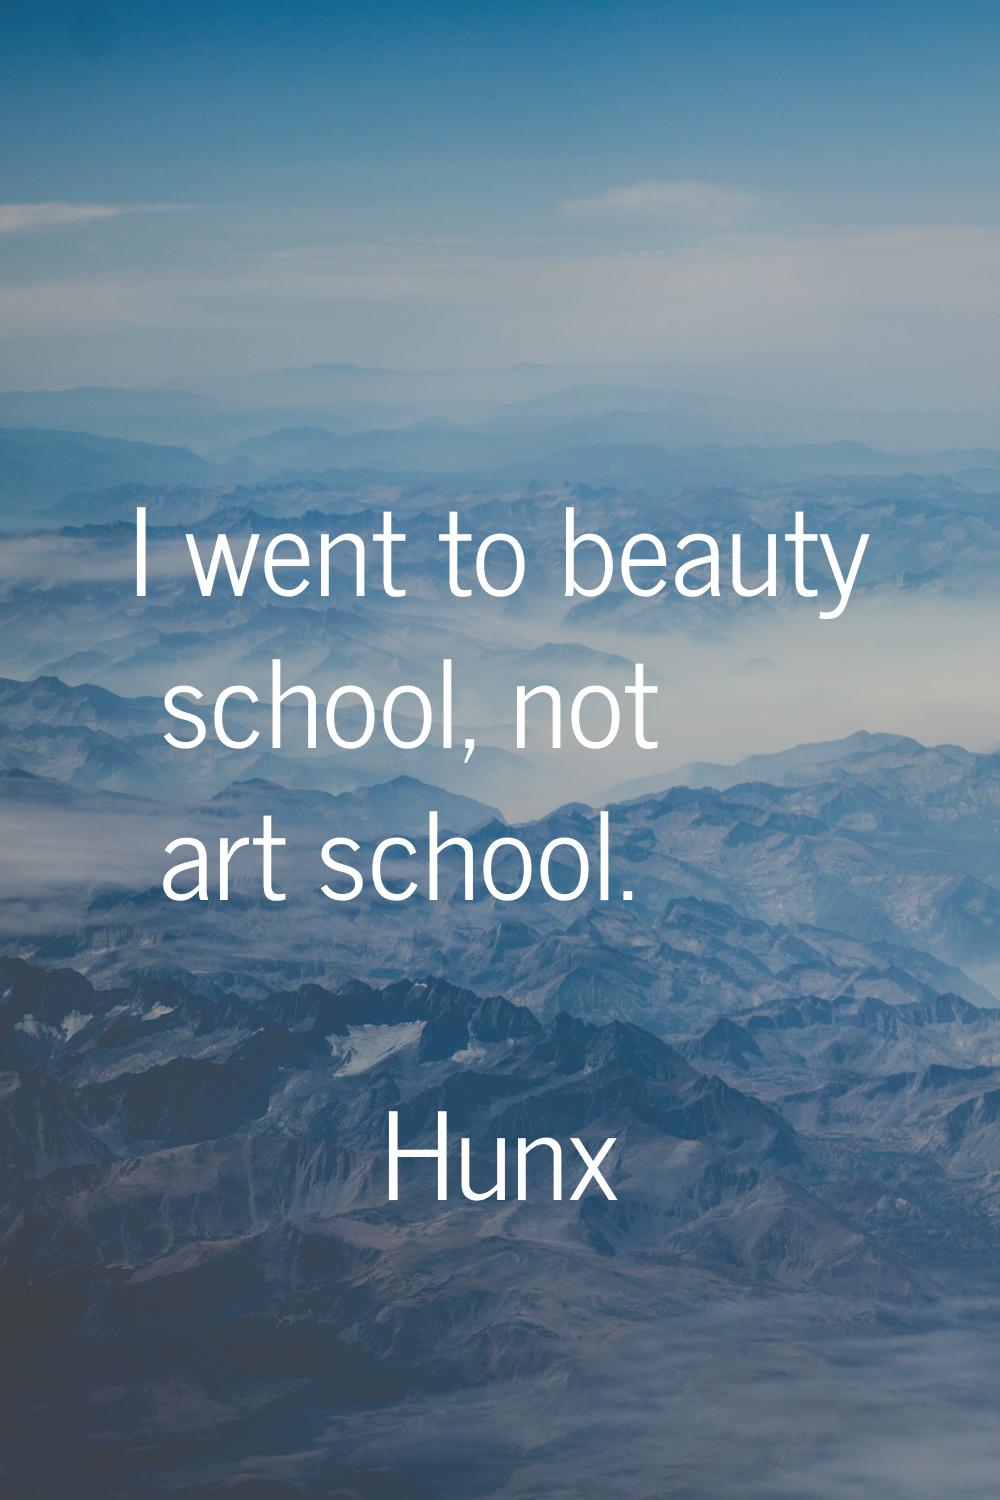 I went to beauty school, not art school.